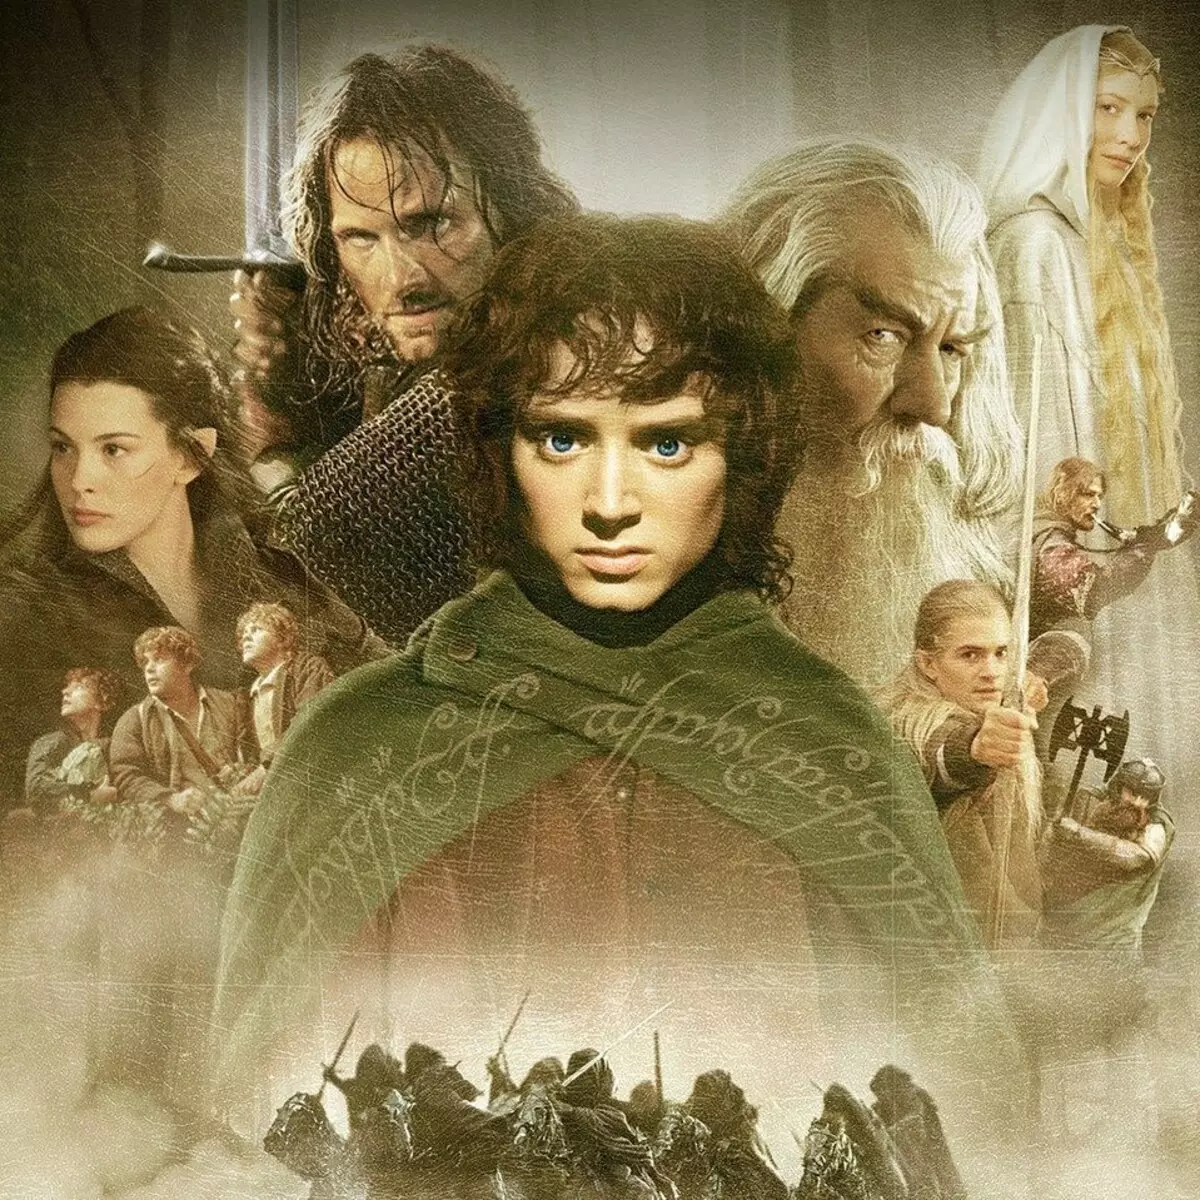 Legolas naGimli, Aragorn naArmen: Nyeredzi dze 